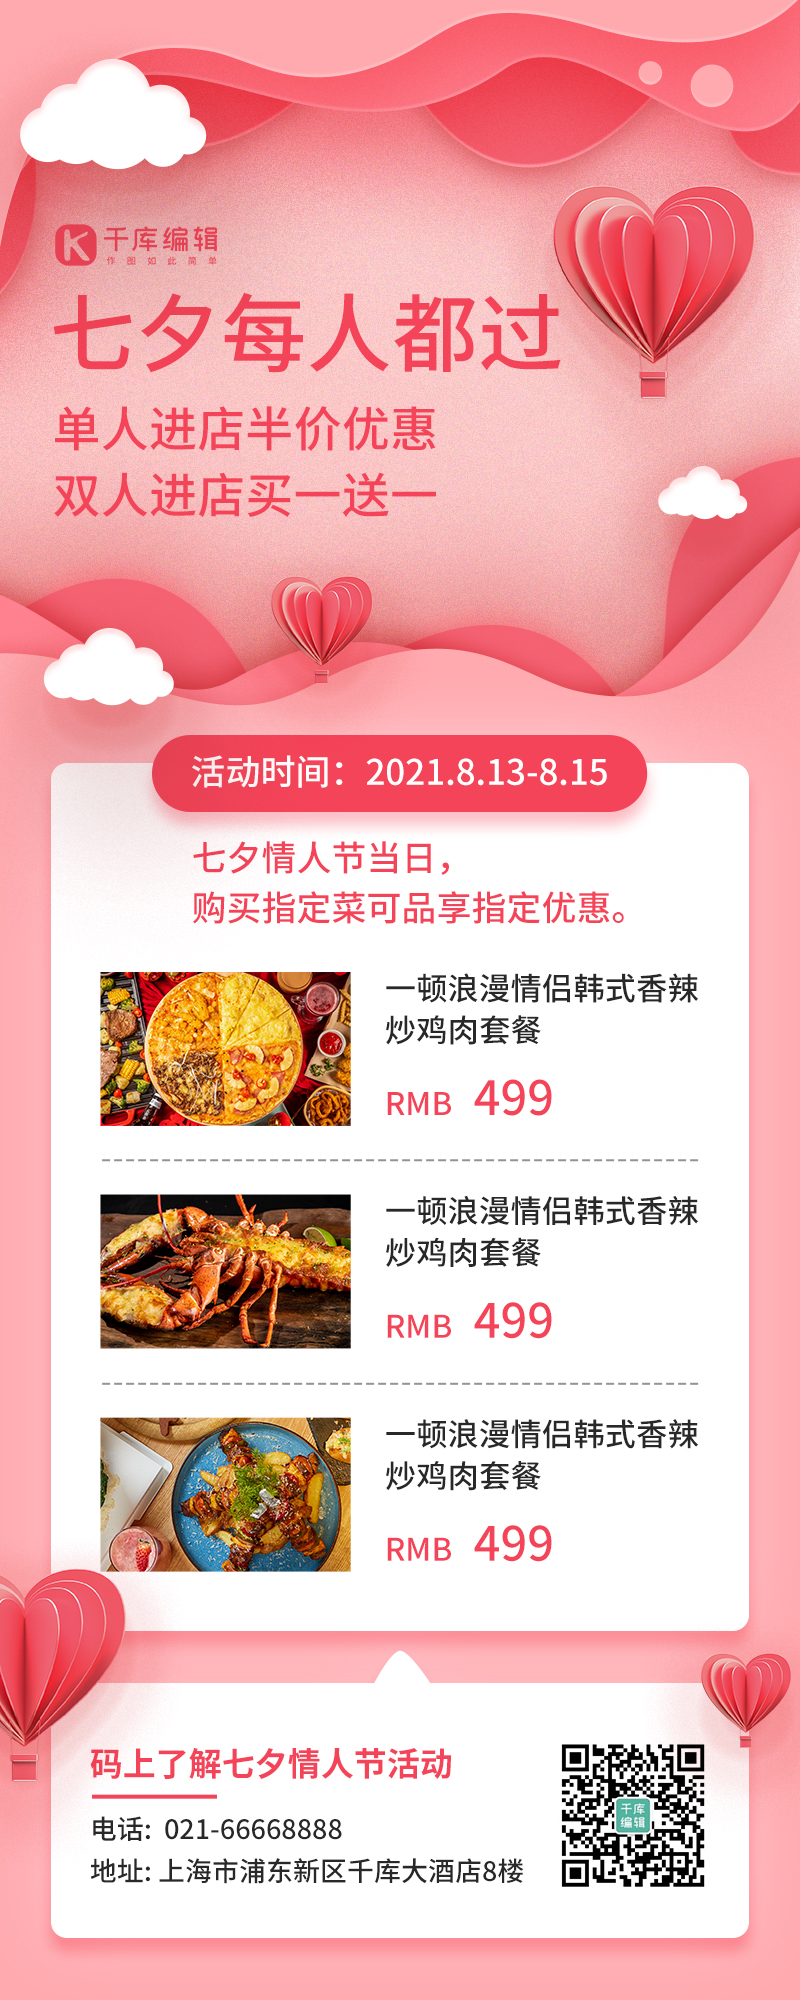 七夕营销美食餐饮优惠促销粉色剪纸风长图海报图片